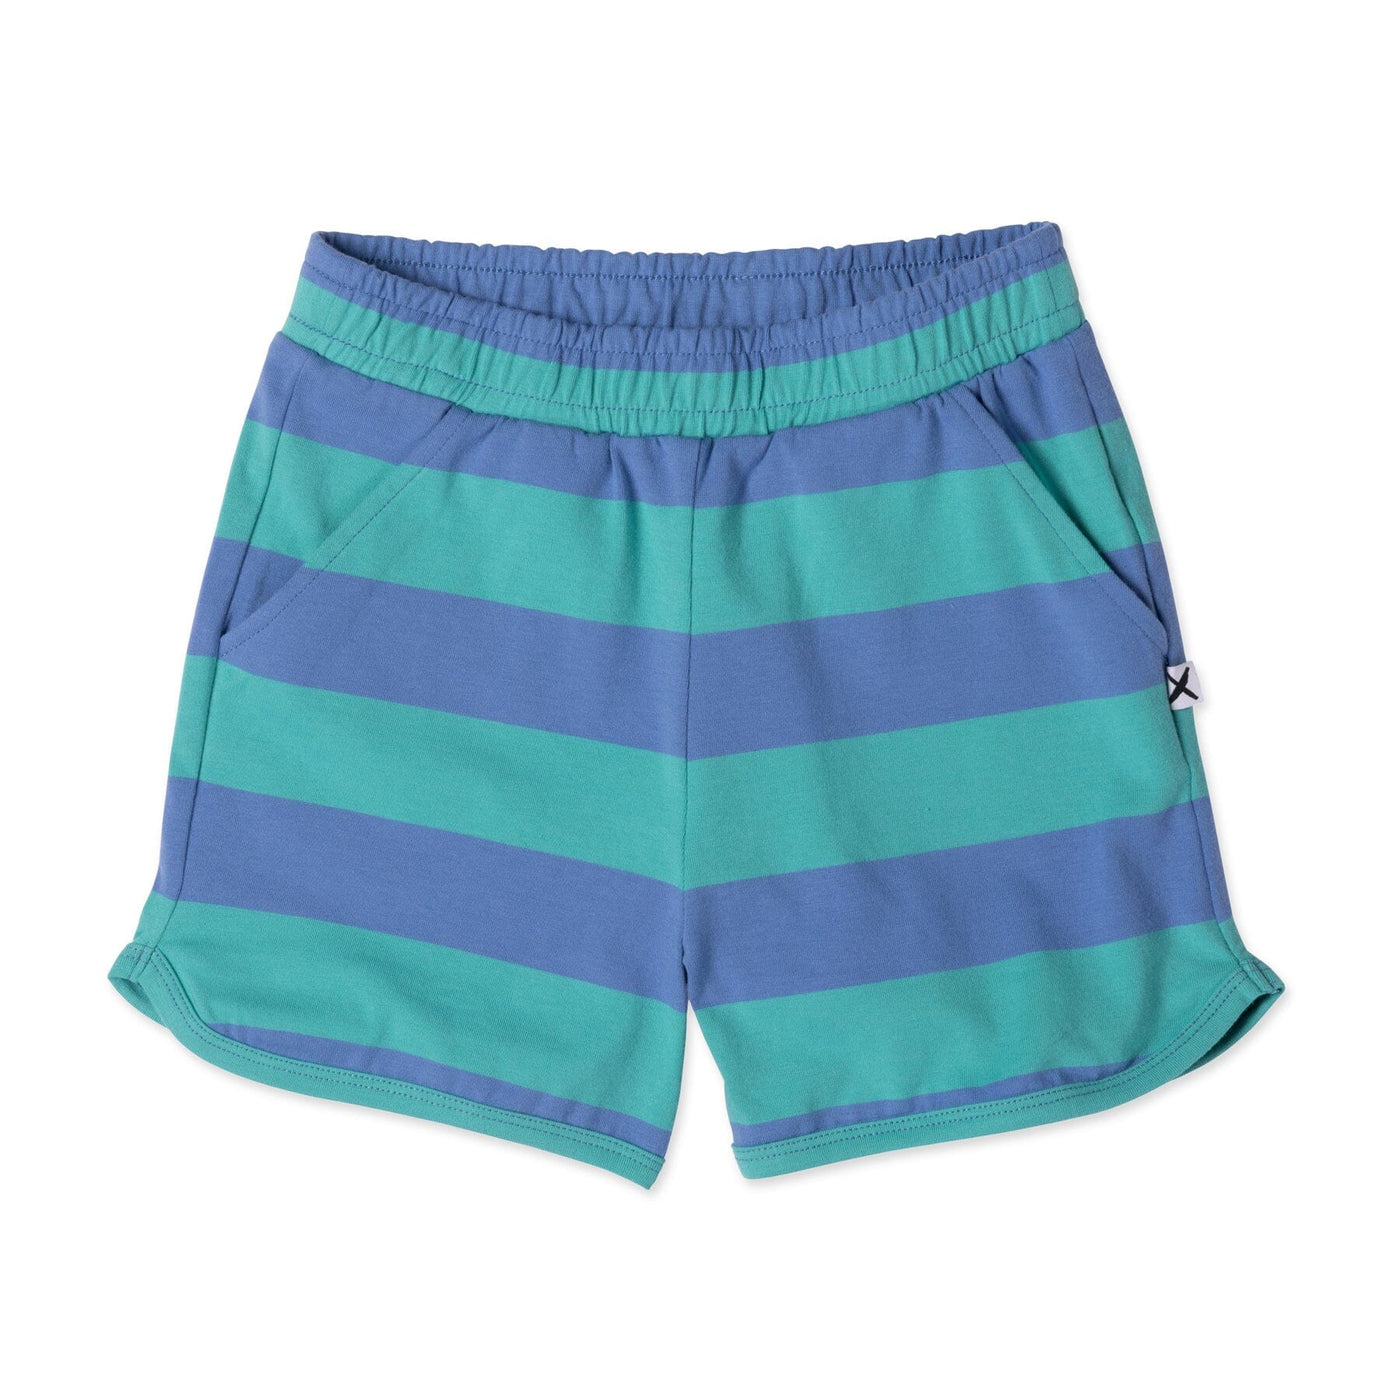 PREORDER Minti Striped Sport Short - Midnight/Green Stripe Shorts Minti 